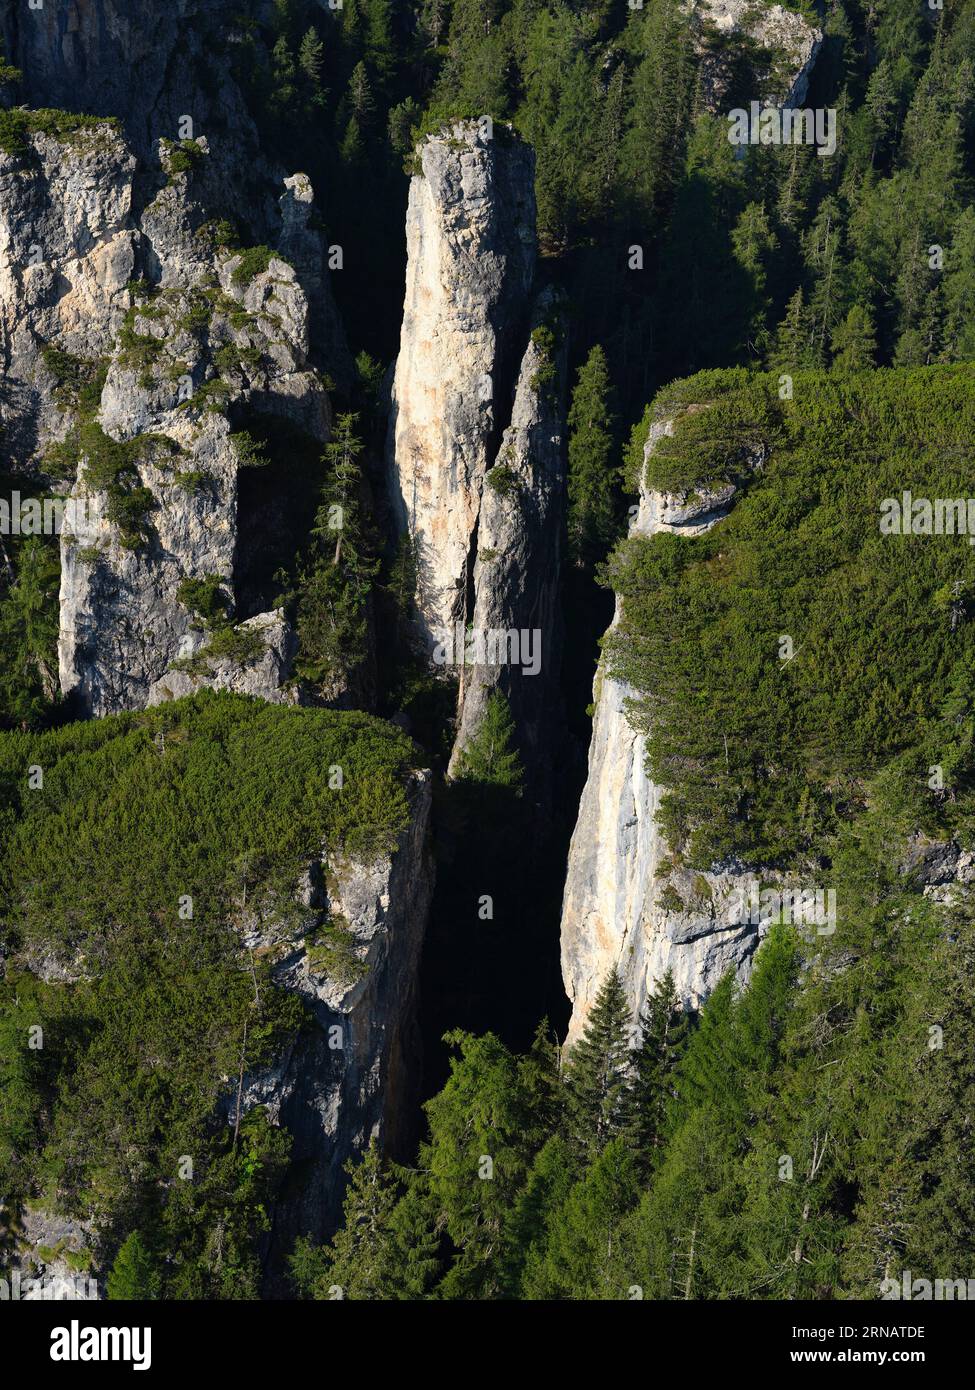 VISTA AEREA. Becco d'Ajal è una curiosità geologica e un luogo noto per l'arrampicata su roccia nei pressi di Cortina d'Ampezzo. Provincia di Belluno, Veneto, Italia. Foto Stock